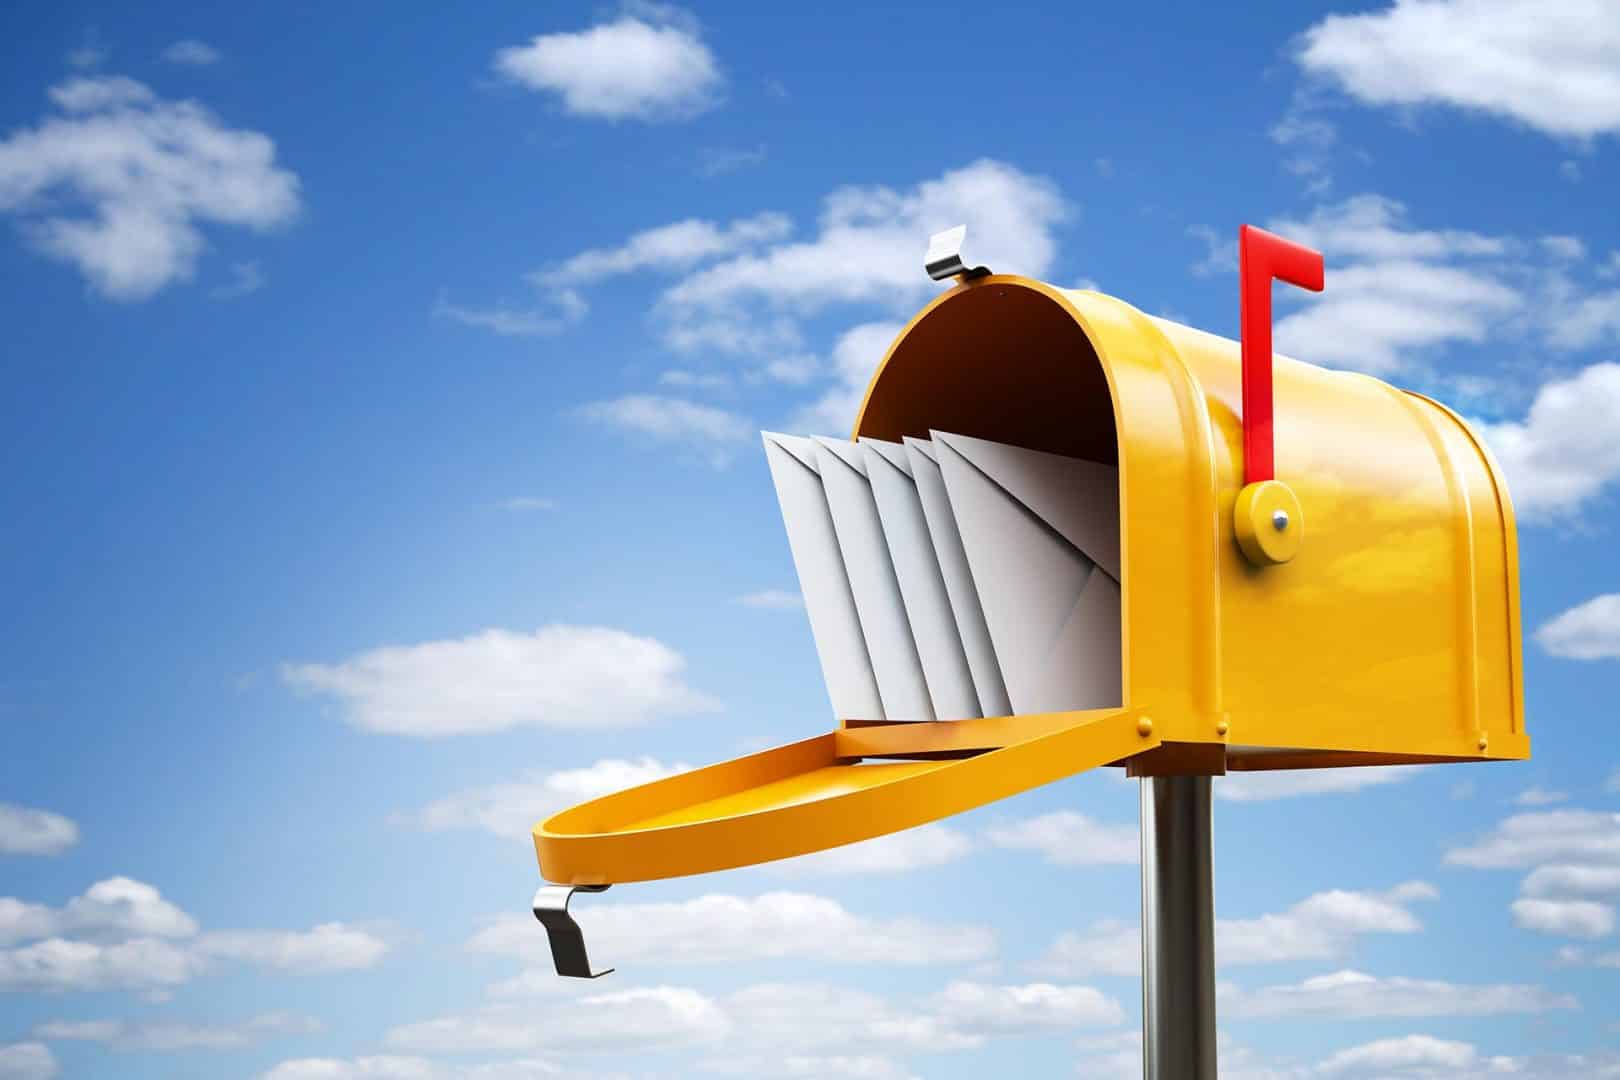 Código de endereçamento postal - CEP, para que serve?